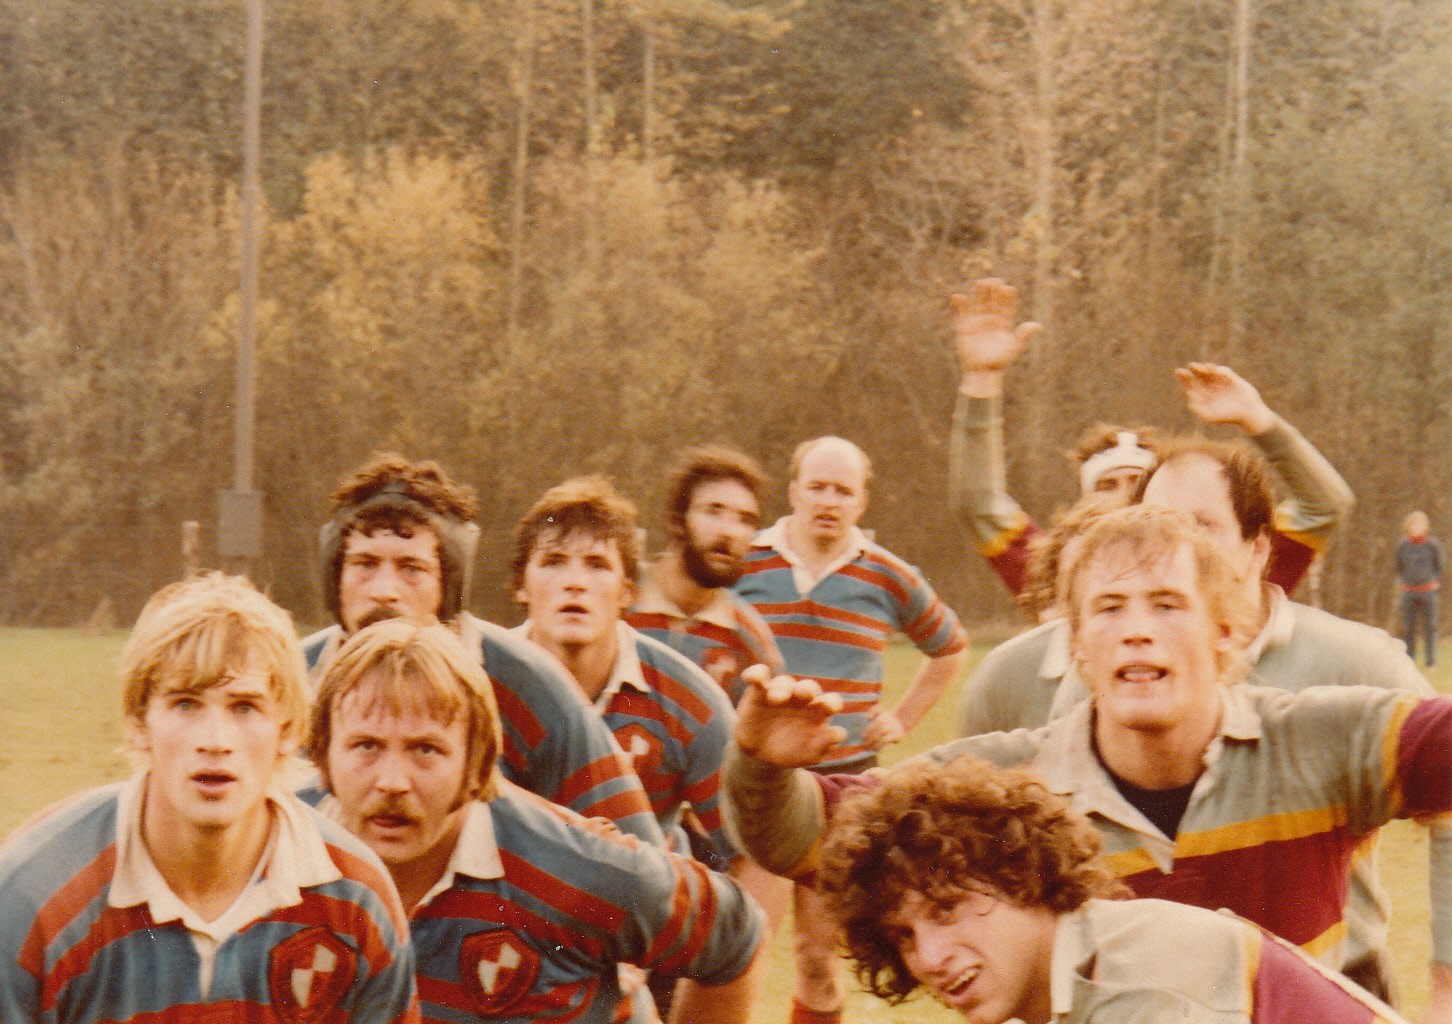 a 1970s men's rugby scrum